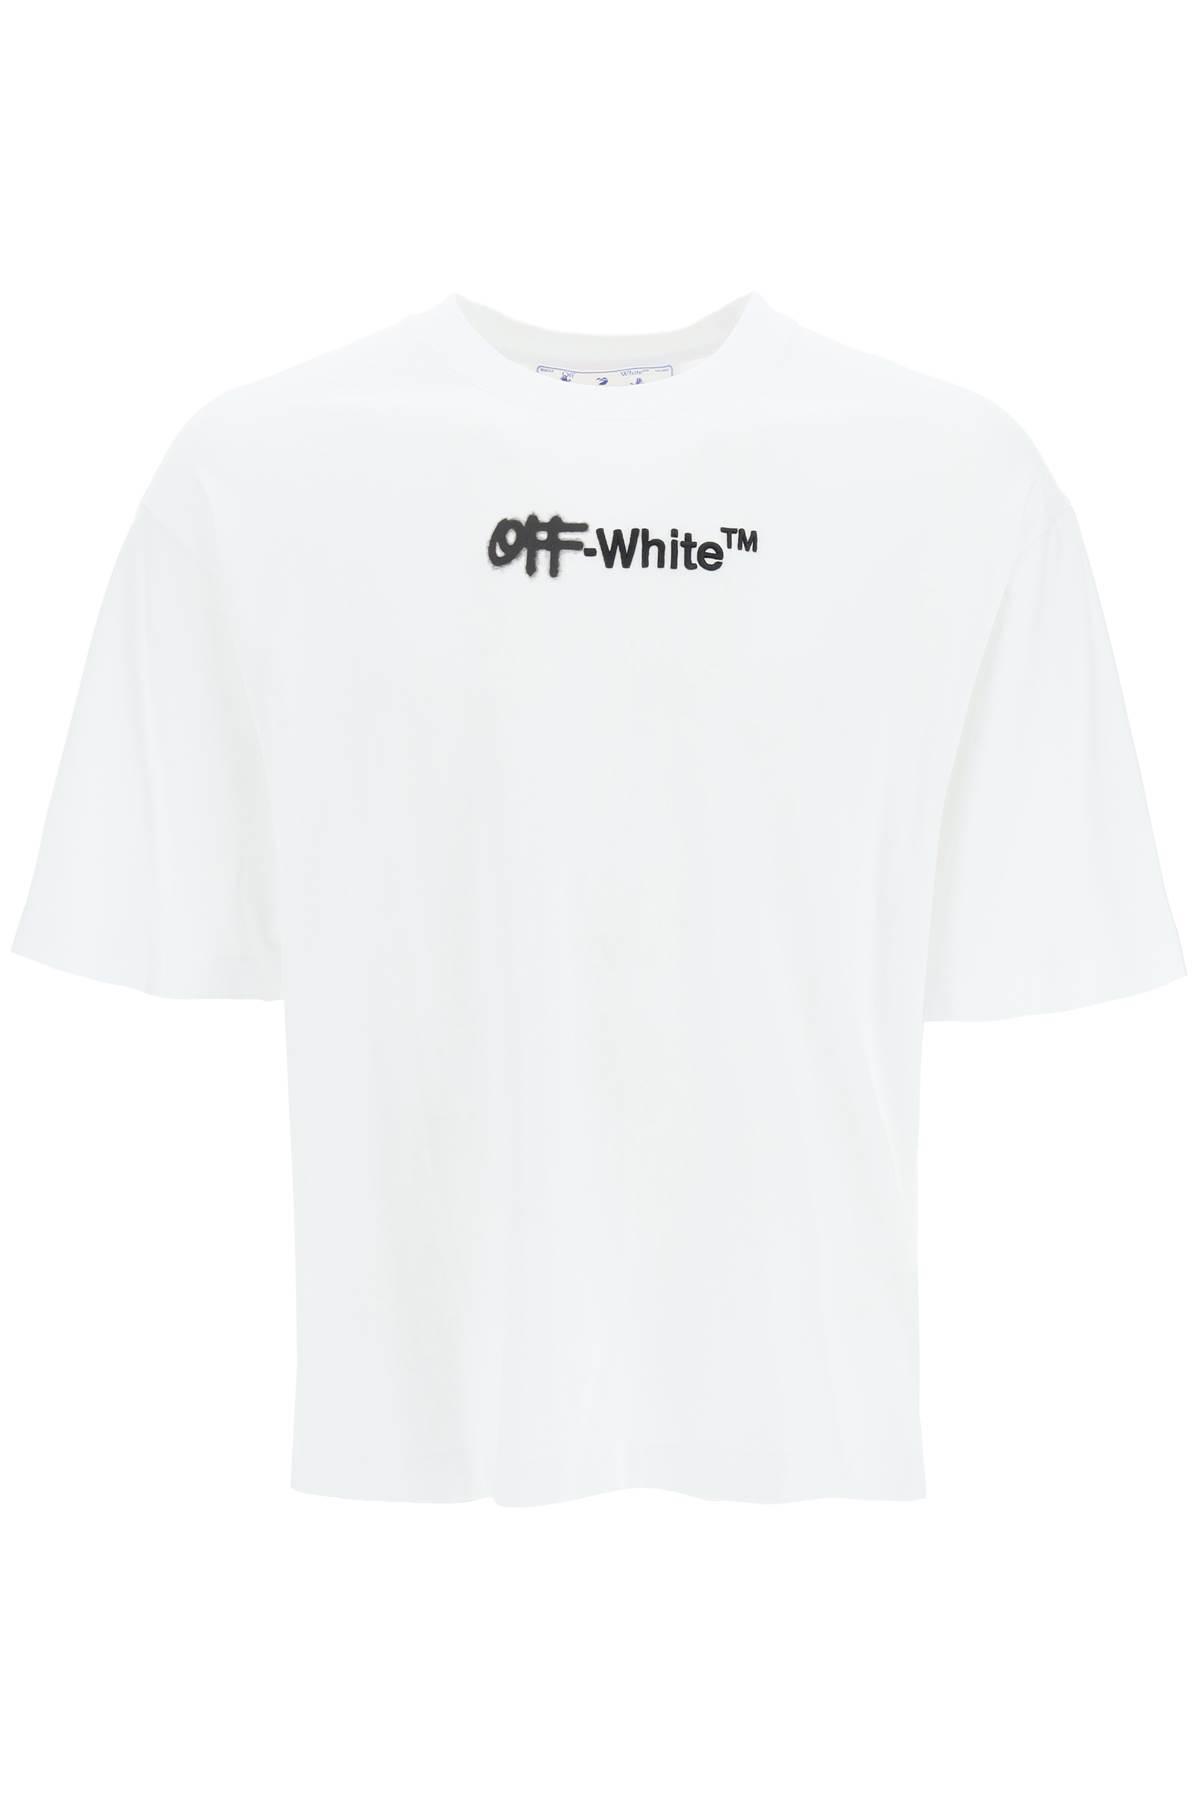 Off-White Spray Skate Oversized T-shirt